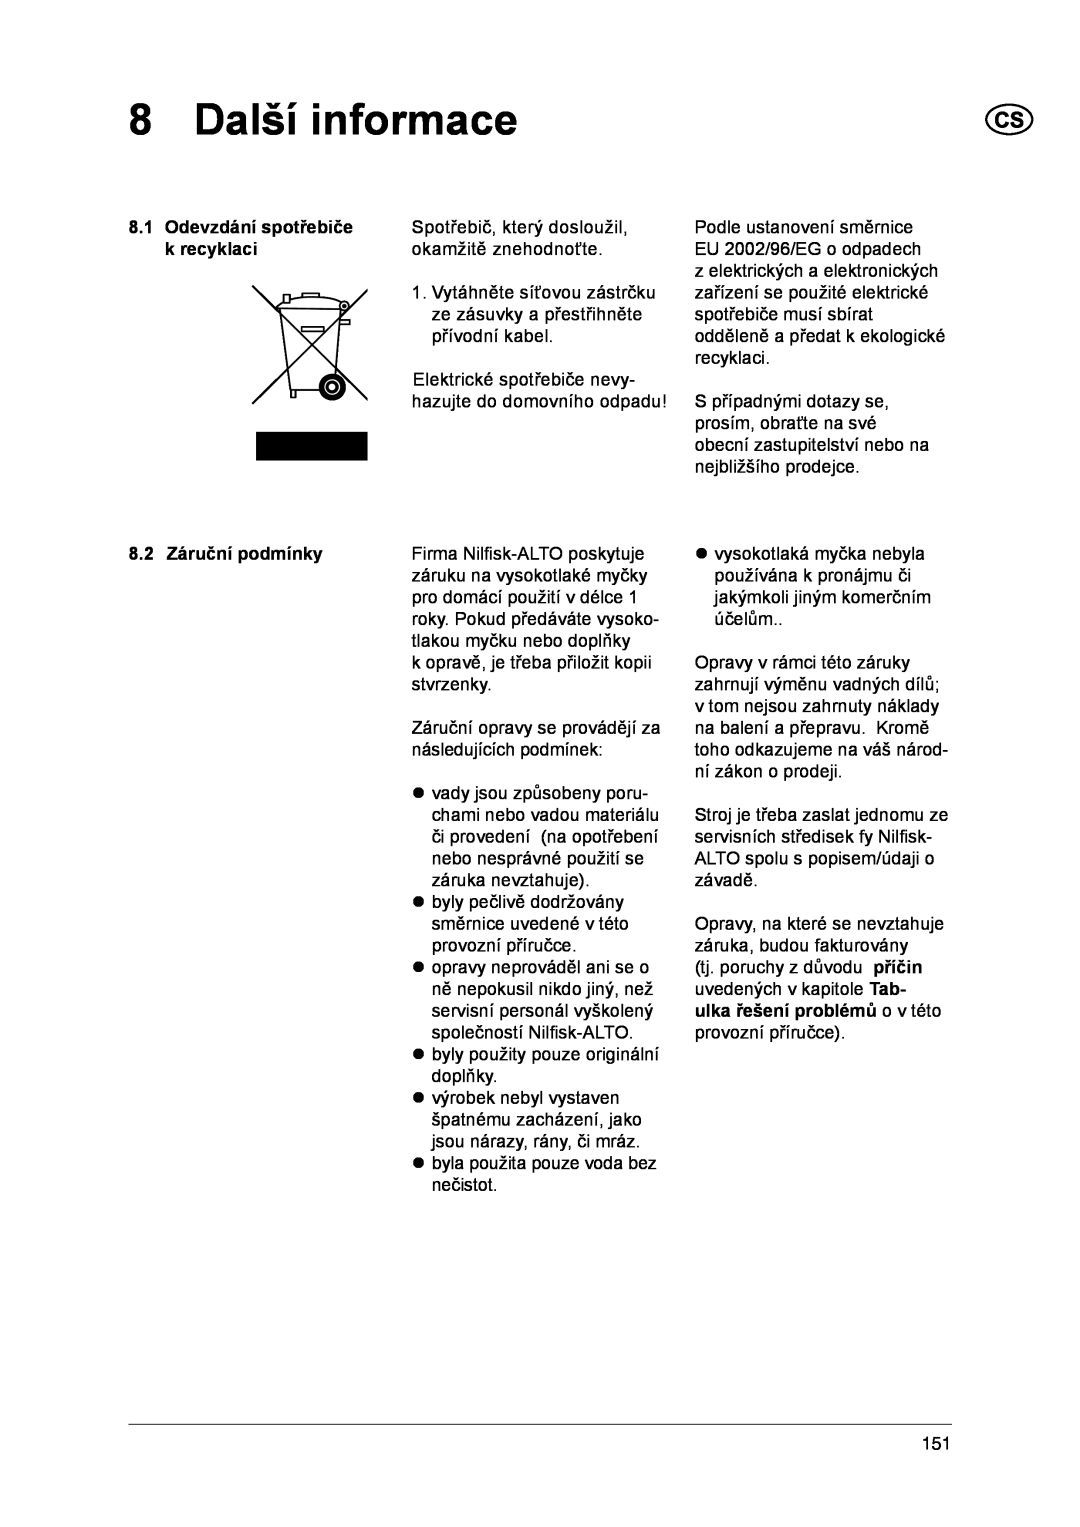 Nilfisk-ALTO 1-20 XT manual 8 Další informace, Odevzdání spotřebiče, k recyklaci, 8.2 Záruční podmínky 